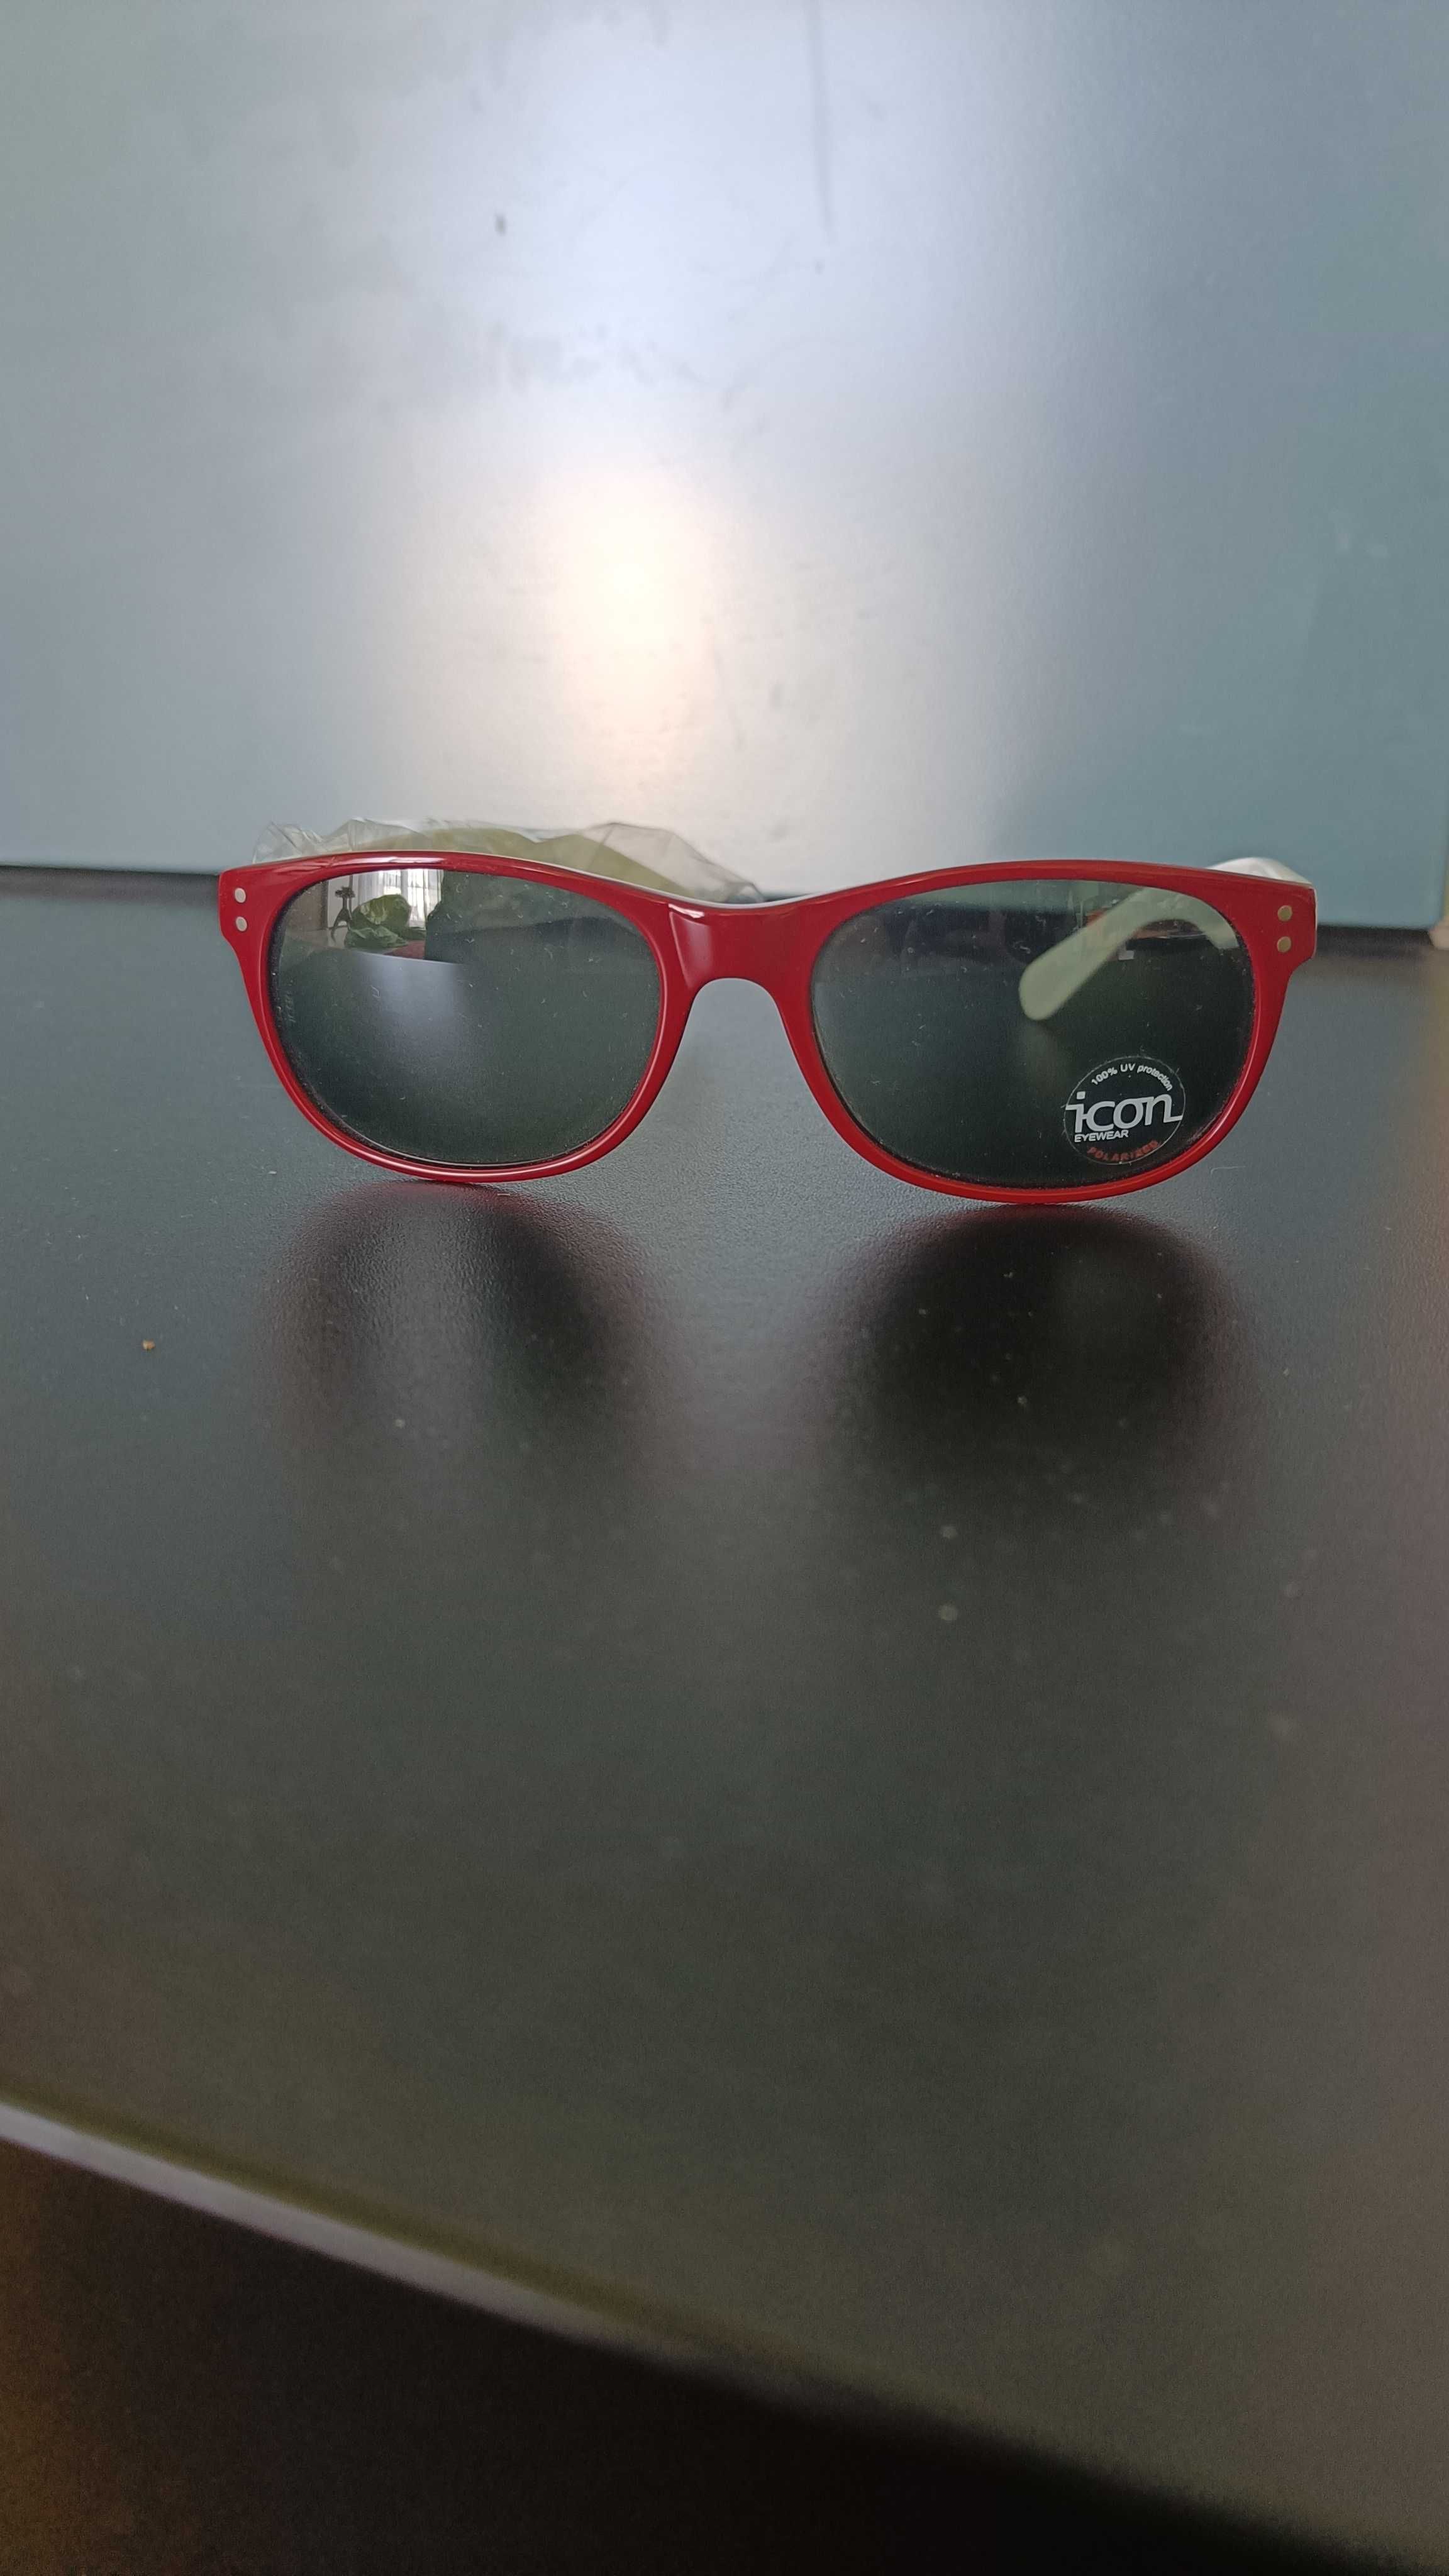 Czerwono białe okulary z polaryzacją limitowana edycja euro 2012 icon